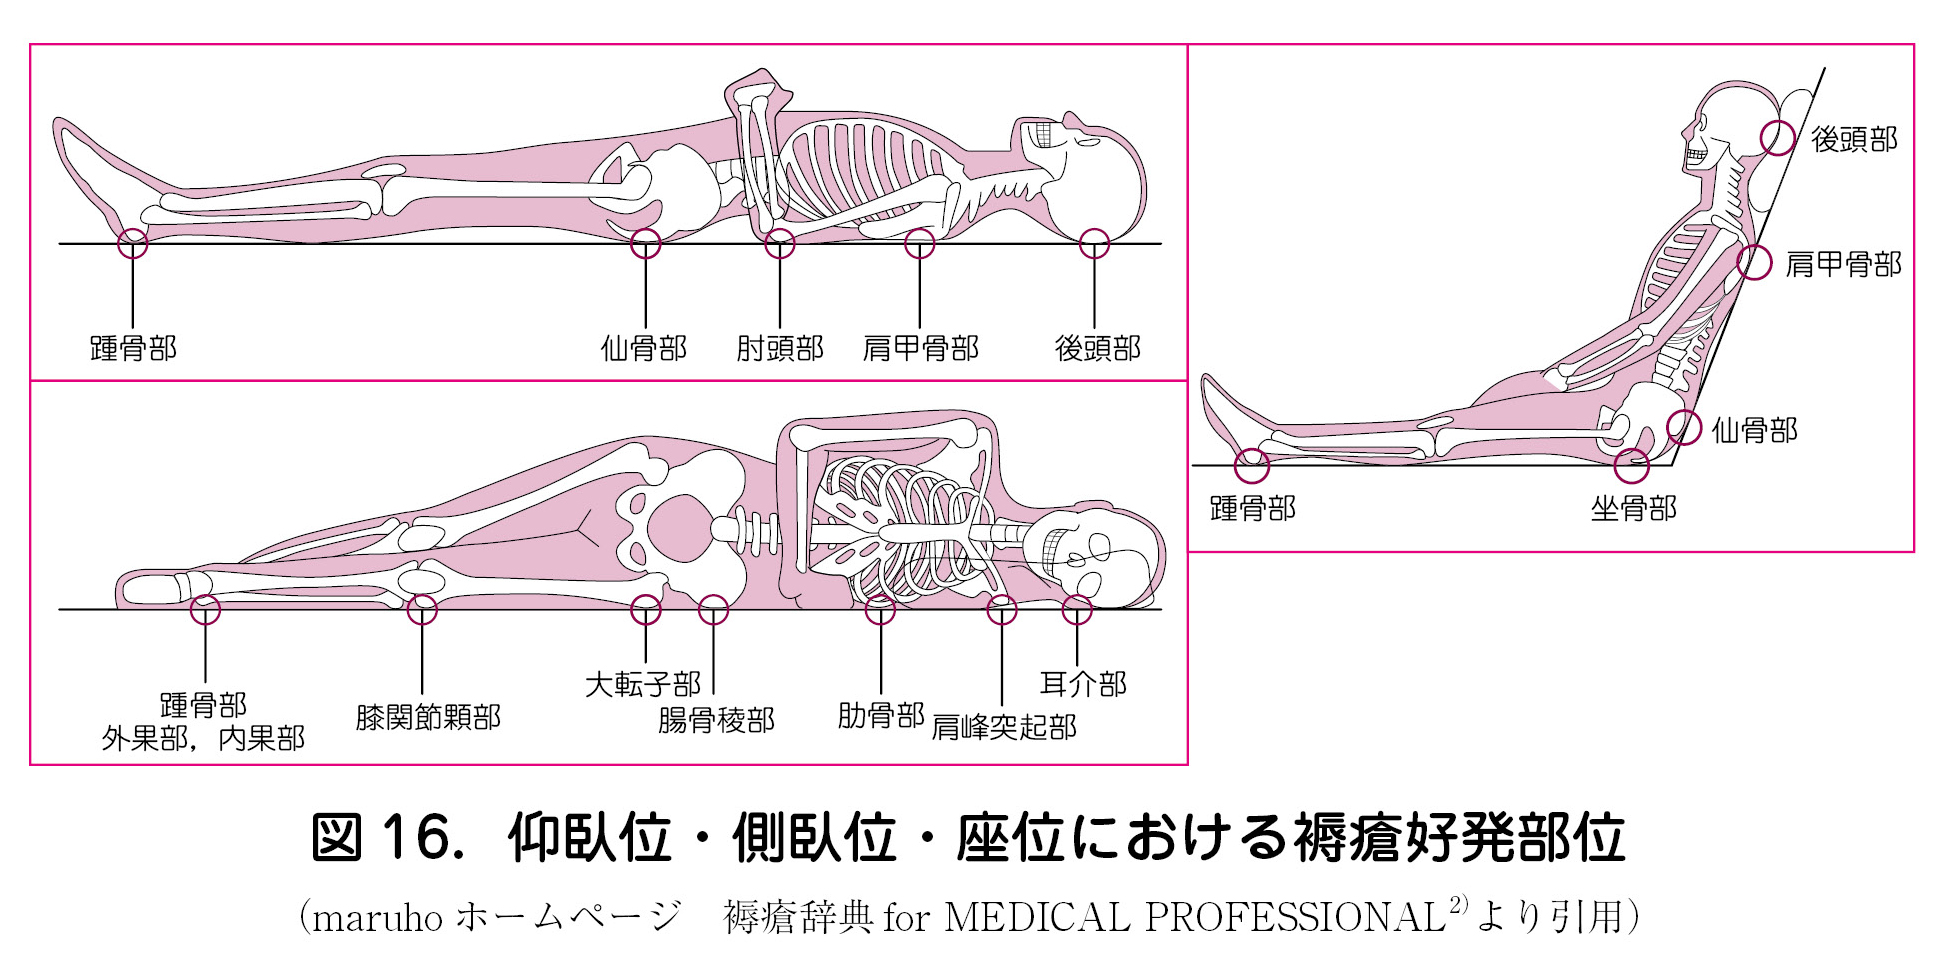 9 褥瘡の予防と管理 日本産婦人科医会